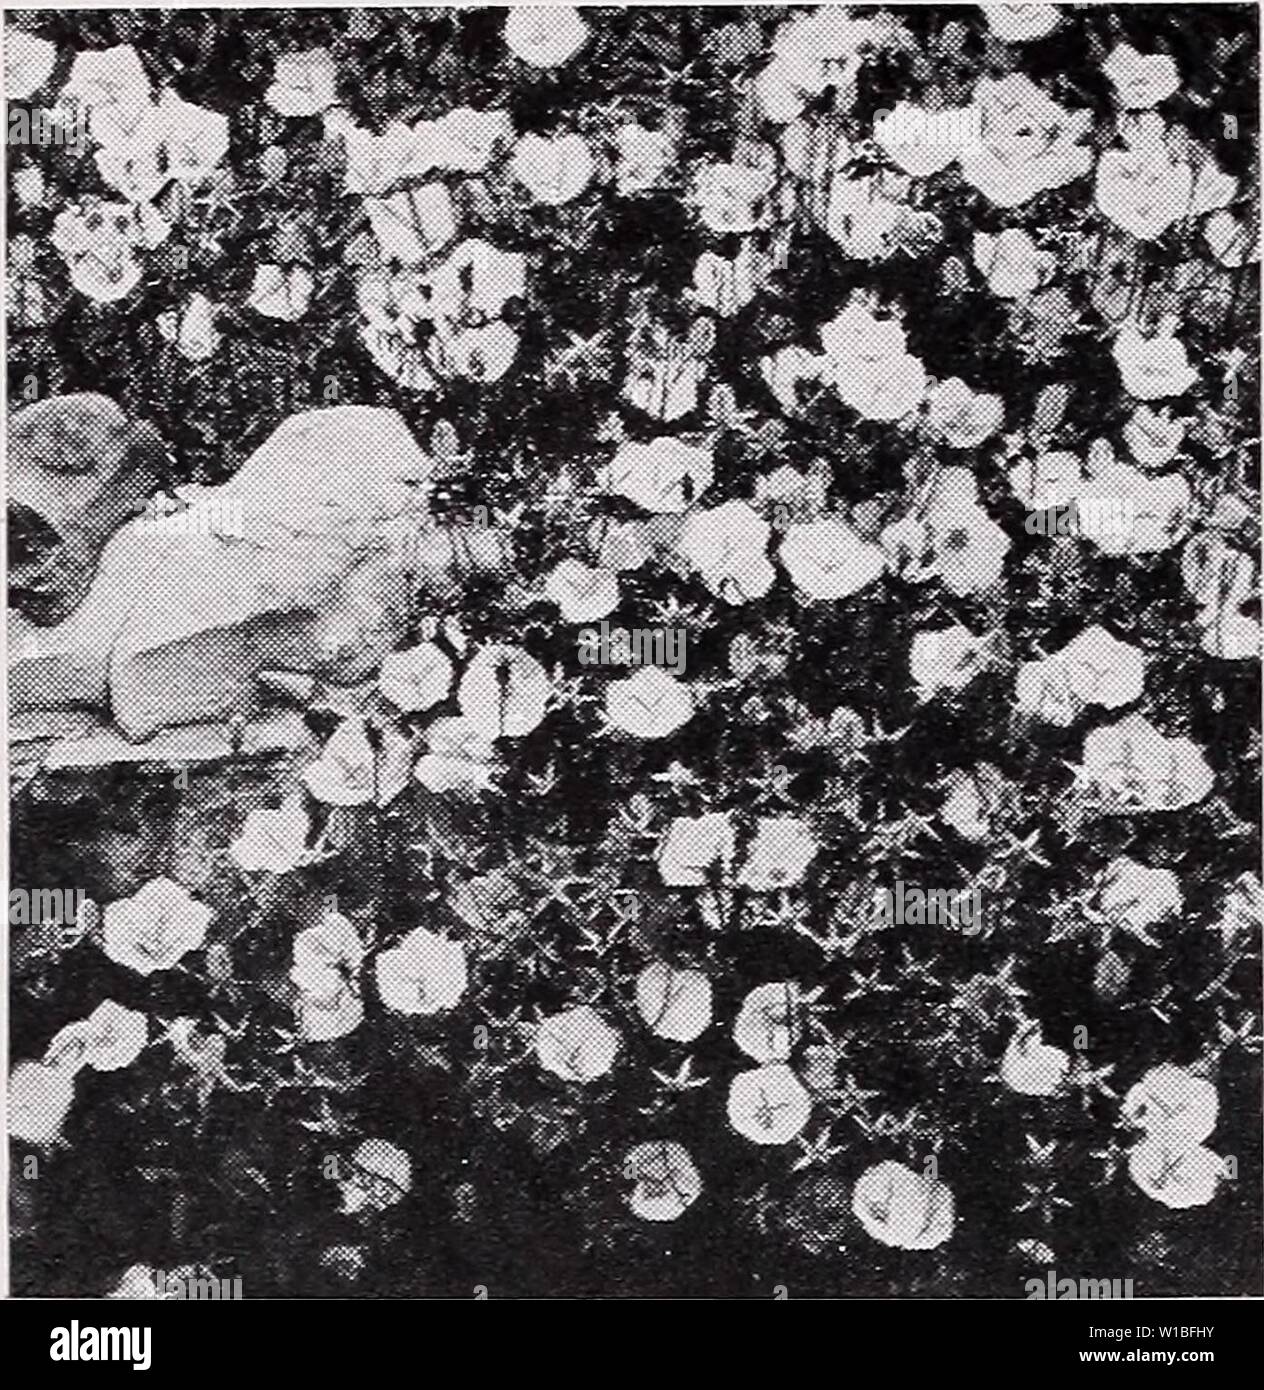 Archiv Bild von Seite 39 Der beschreibende Preisliste (1935). Beschreibende Preisliste. descriptiveprice 00 cmho 1 Jahr: 1935 C. M. HOBBS 8 C SONS, INC., Bridgeport, Indiana Campanula carpatica. ASTILBE aruncus. Langen, gefiederten Schwaden von weißen Blumen. Jeder, 30 c; 10, 2.50 $. A. Davidi. Tief rosa violett Blumen; 3 bis 4 Fuß. Juni und Juli. Jeder, 30 c; 10, 2.50 $. A. in Gladstone. Schnee-weiße Blumen, starke Stiele; am Besten für zu zwingen. Jeder, 30 c; 10, 2.50 $. A. rosa Perle. Traversen der schönen rosa Flow-ers. Jeder, 30 c; 10, 2.50 $. BELLIS perennis. Kleines Doppelzimmer Blumen auf zwerg Anlage. Fein für Bordüren und b Stockfoto